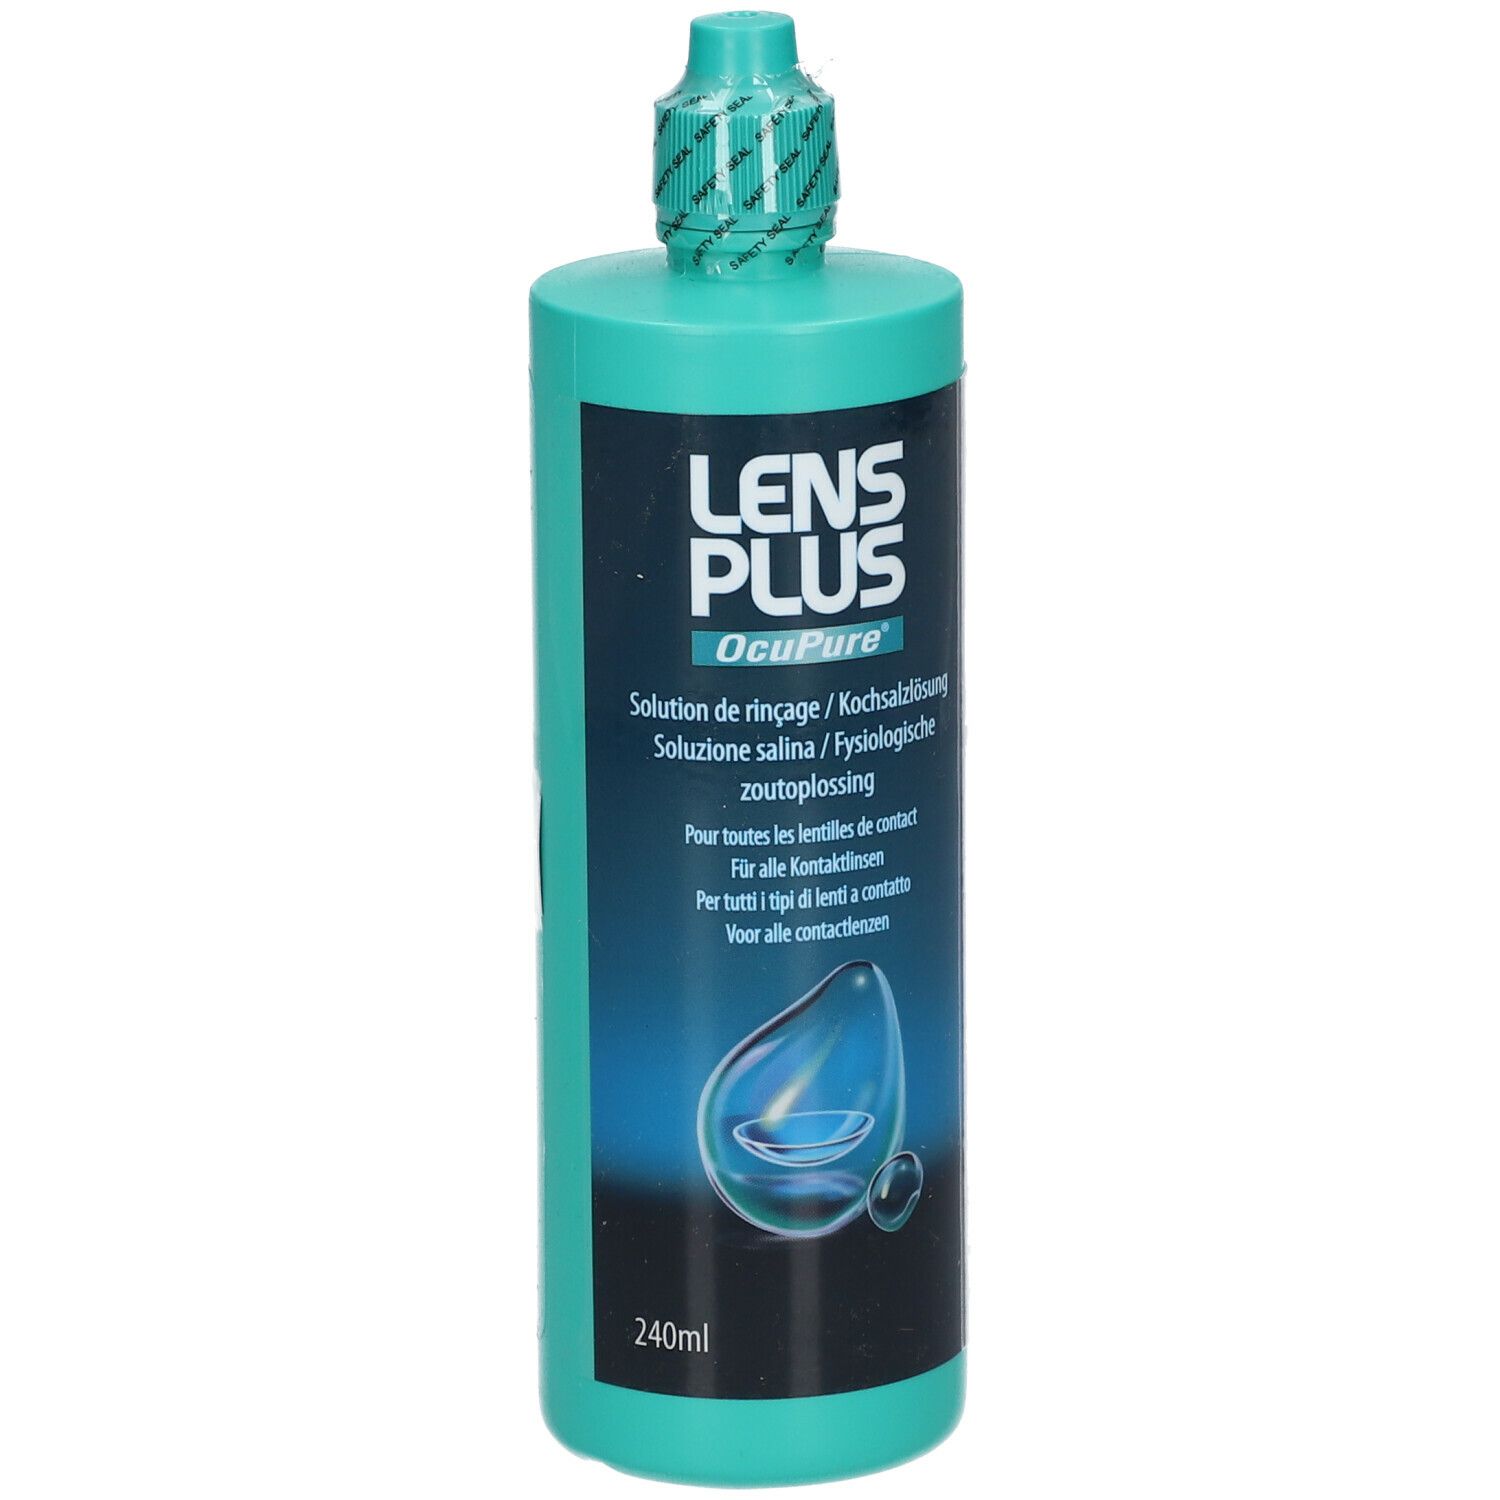 Lens Plus Ocupure® Solution de rinçage